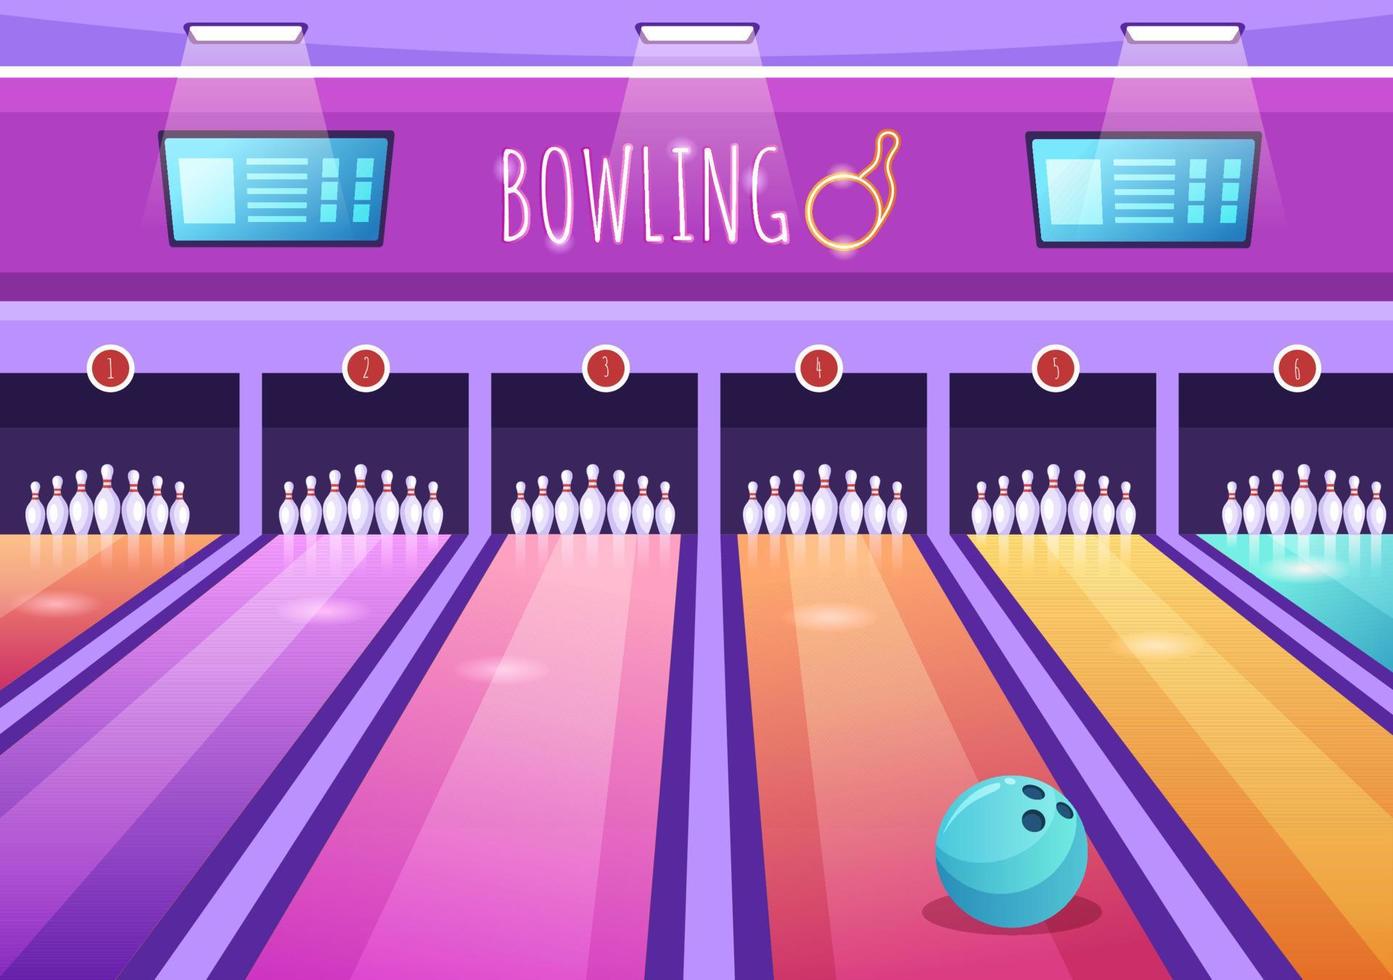 Bowlingspiel handgezeichnete Cartoon flache Hintergrunddesignillustration mit Stiften, Bällen und Anzeigetafeln in einem Sportverein oder Aktivitätswettbewerb vektor